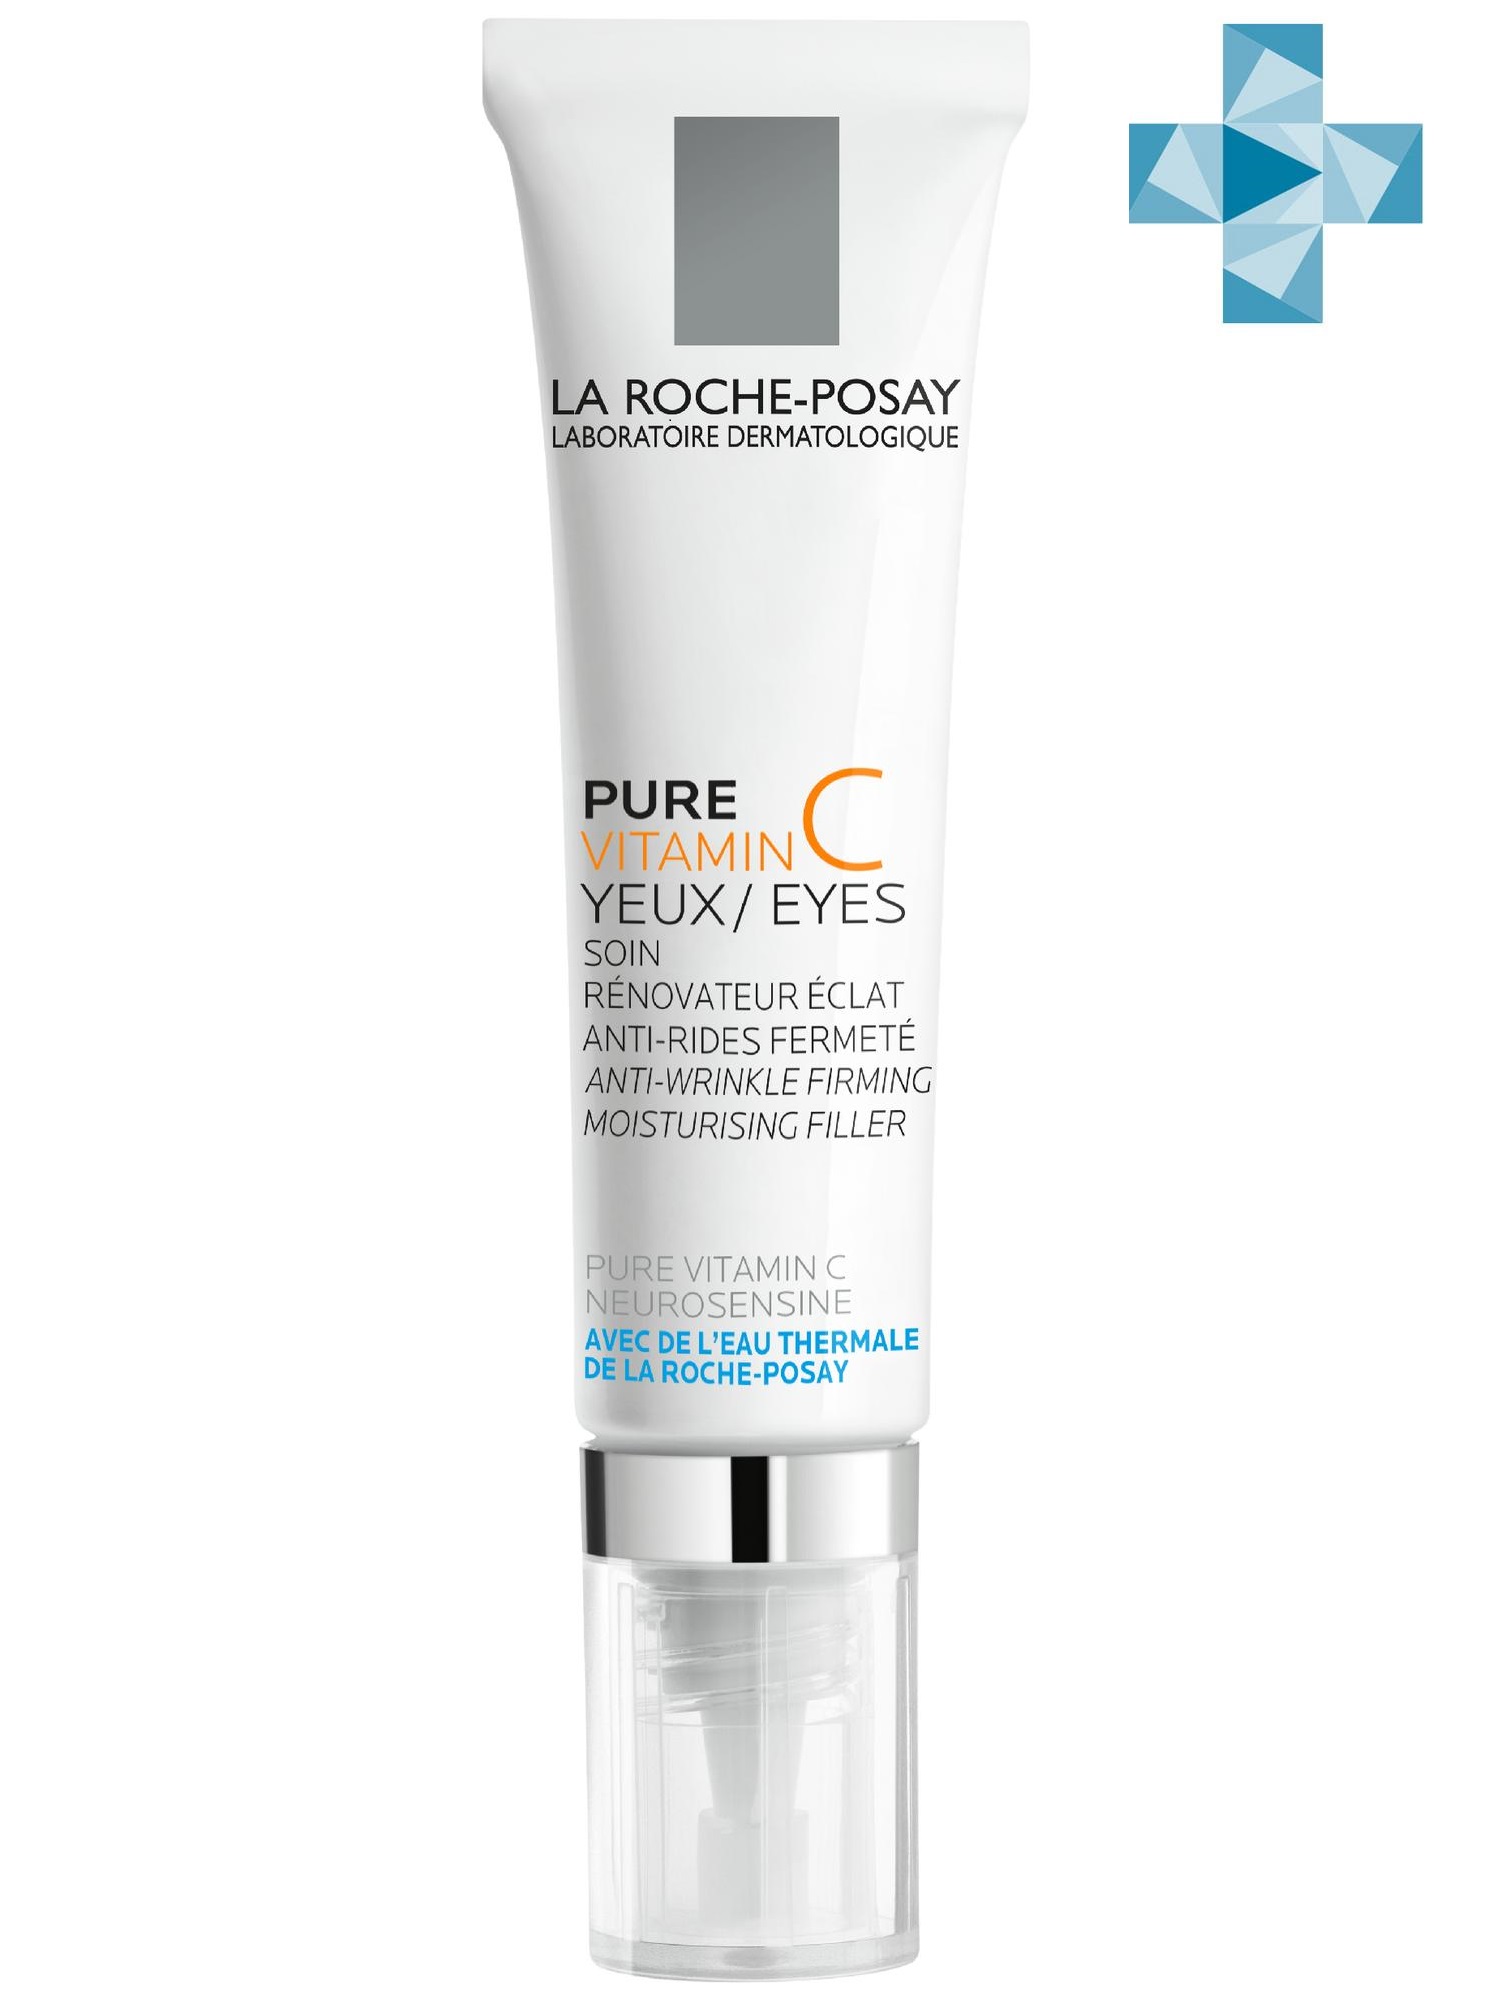 La Roche-Posay Антивозрастной крем-филлер для заполнения морщин для контура глаз Витамин С, 15 мл (La Roche-Posay, Vitamin C)